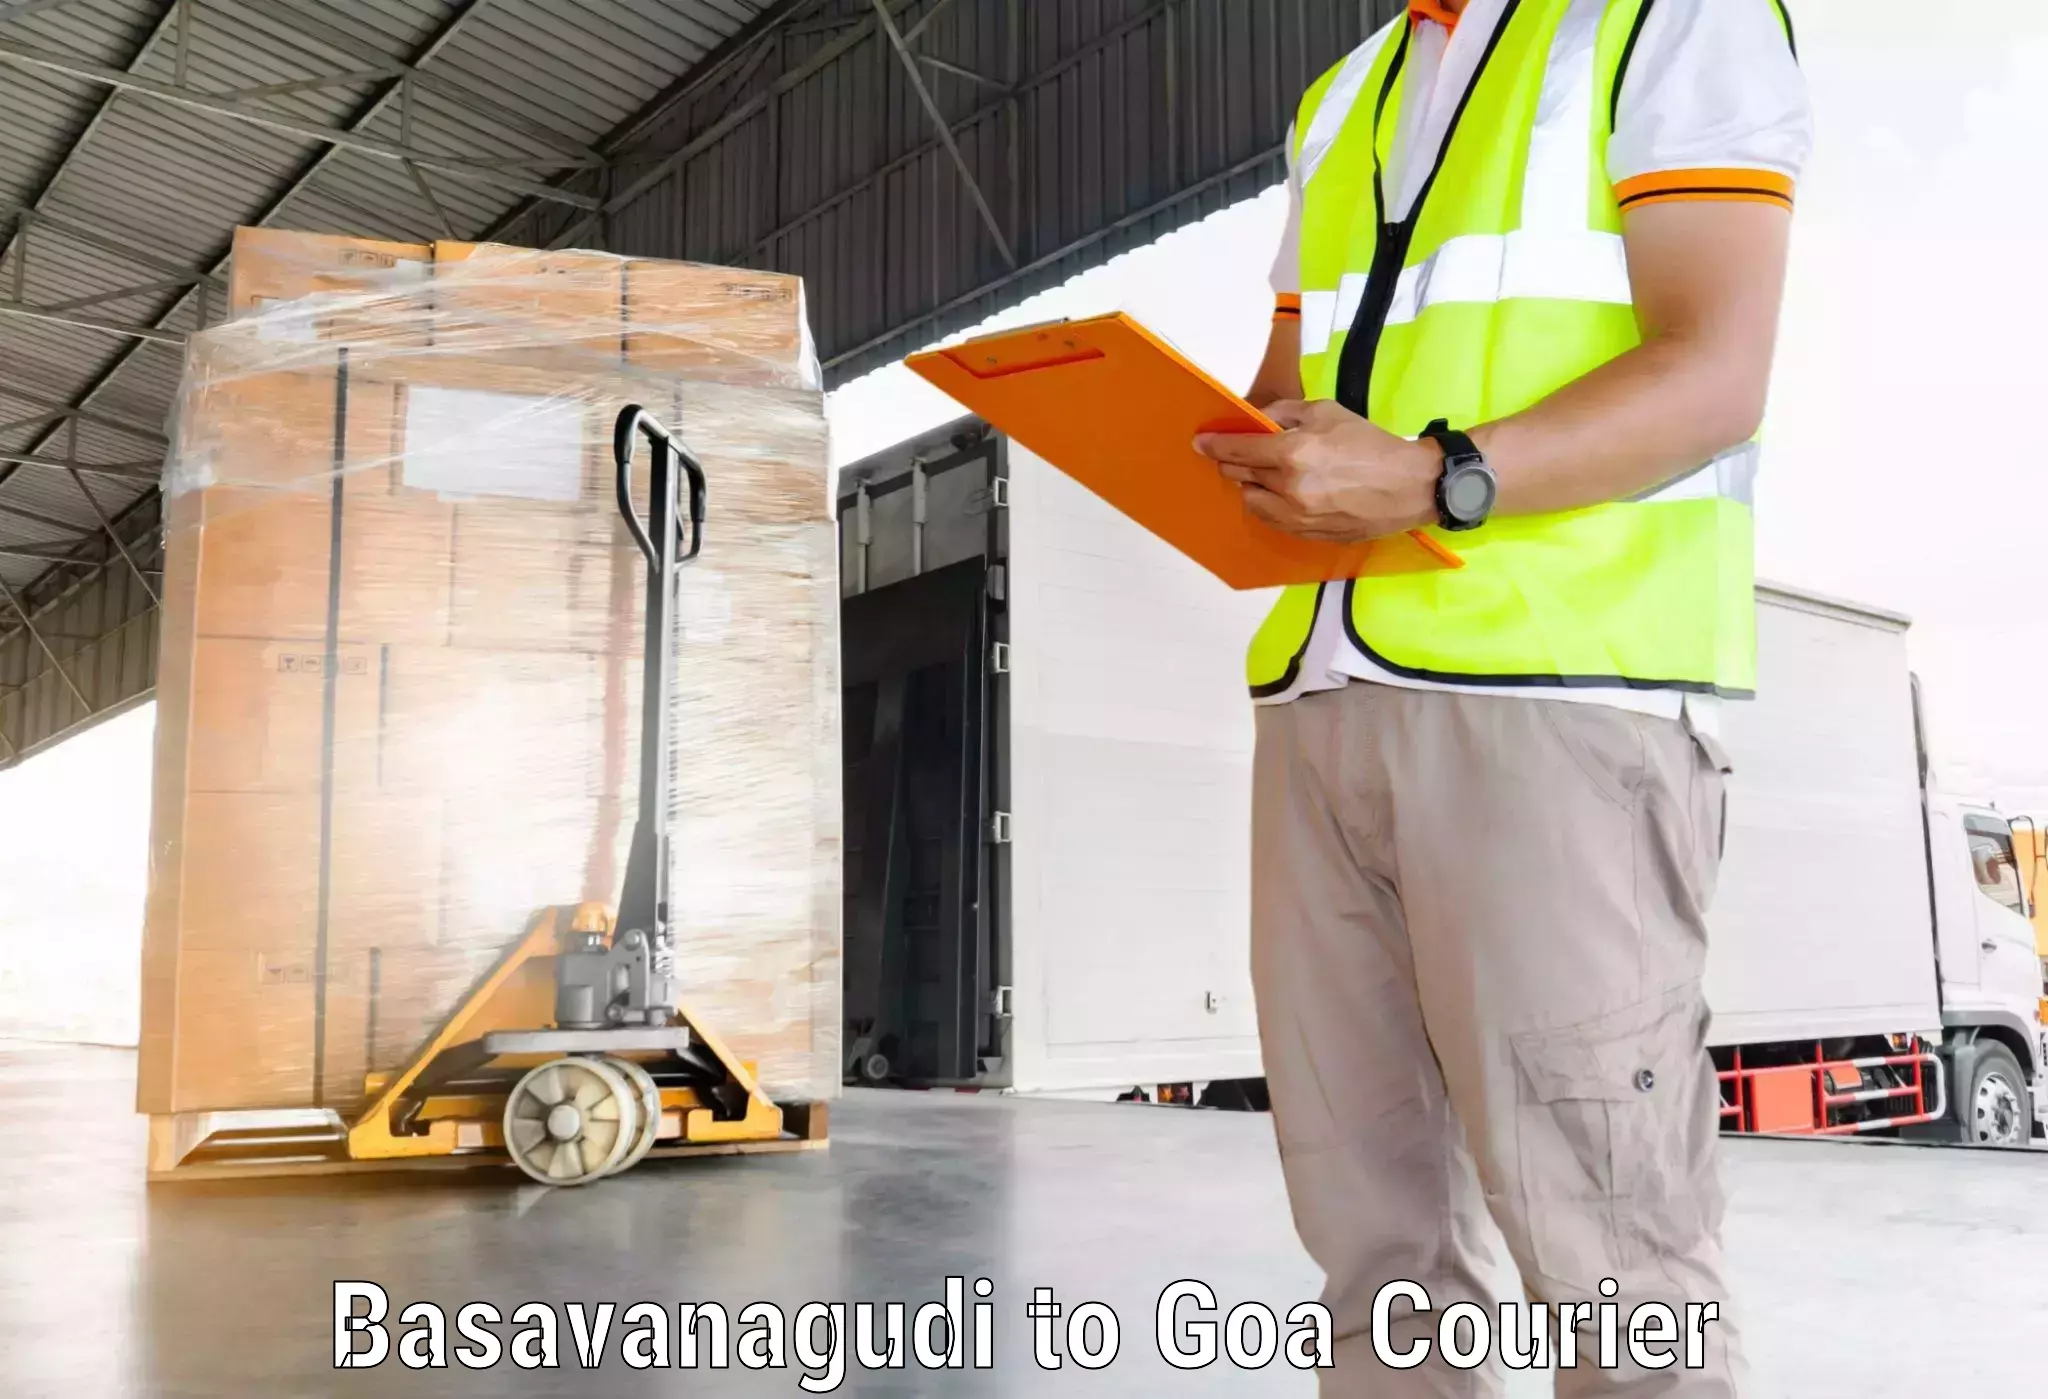 Same-day delivery options Basavanagudi to Mormugao Port